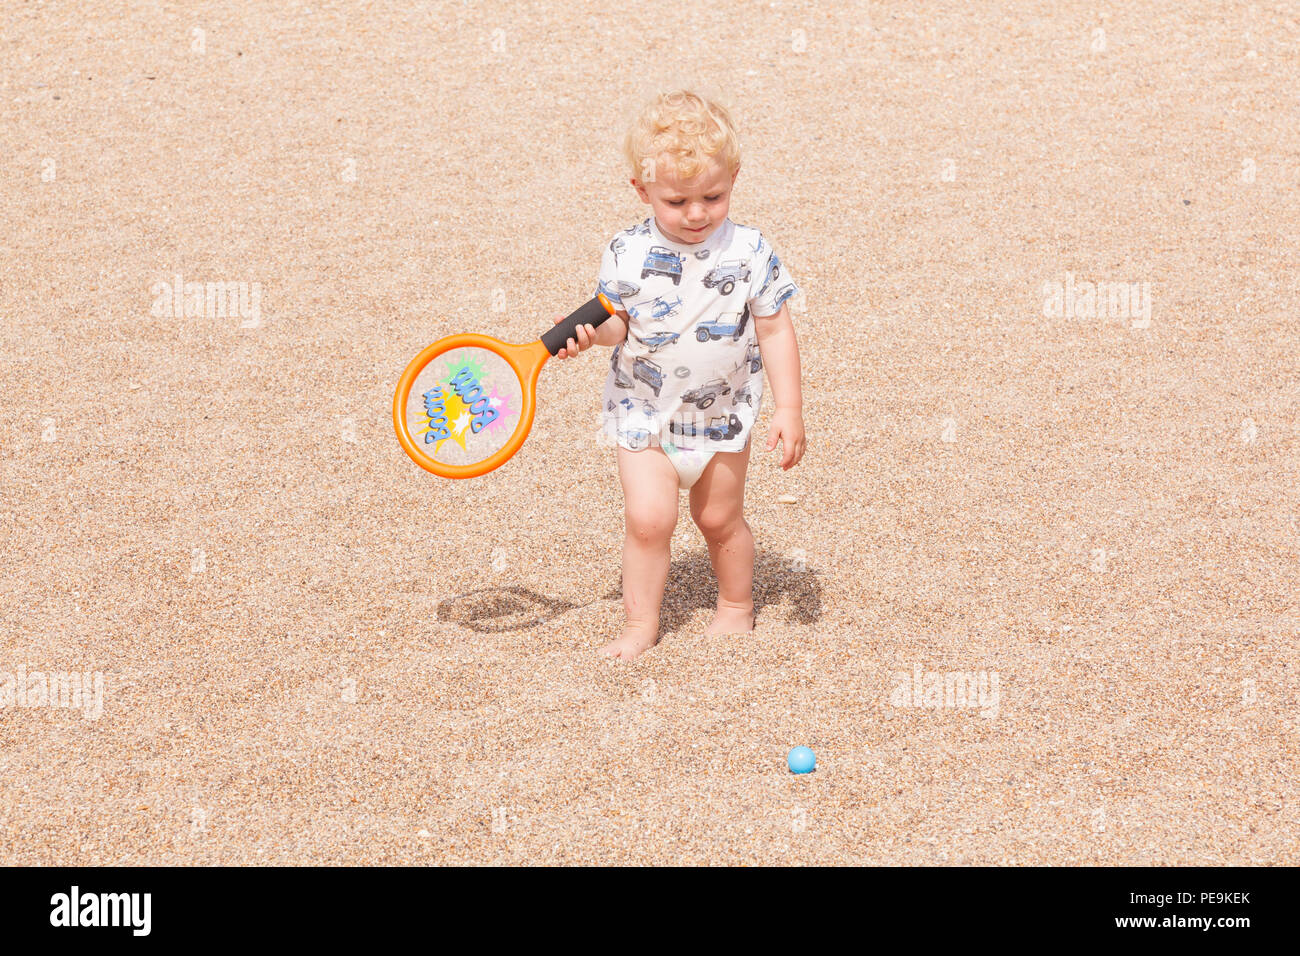 Garçon de deux ans jouant avec une batte et un ballon, Devon, Angleterre, Royaume-Uni. Banque D'Images